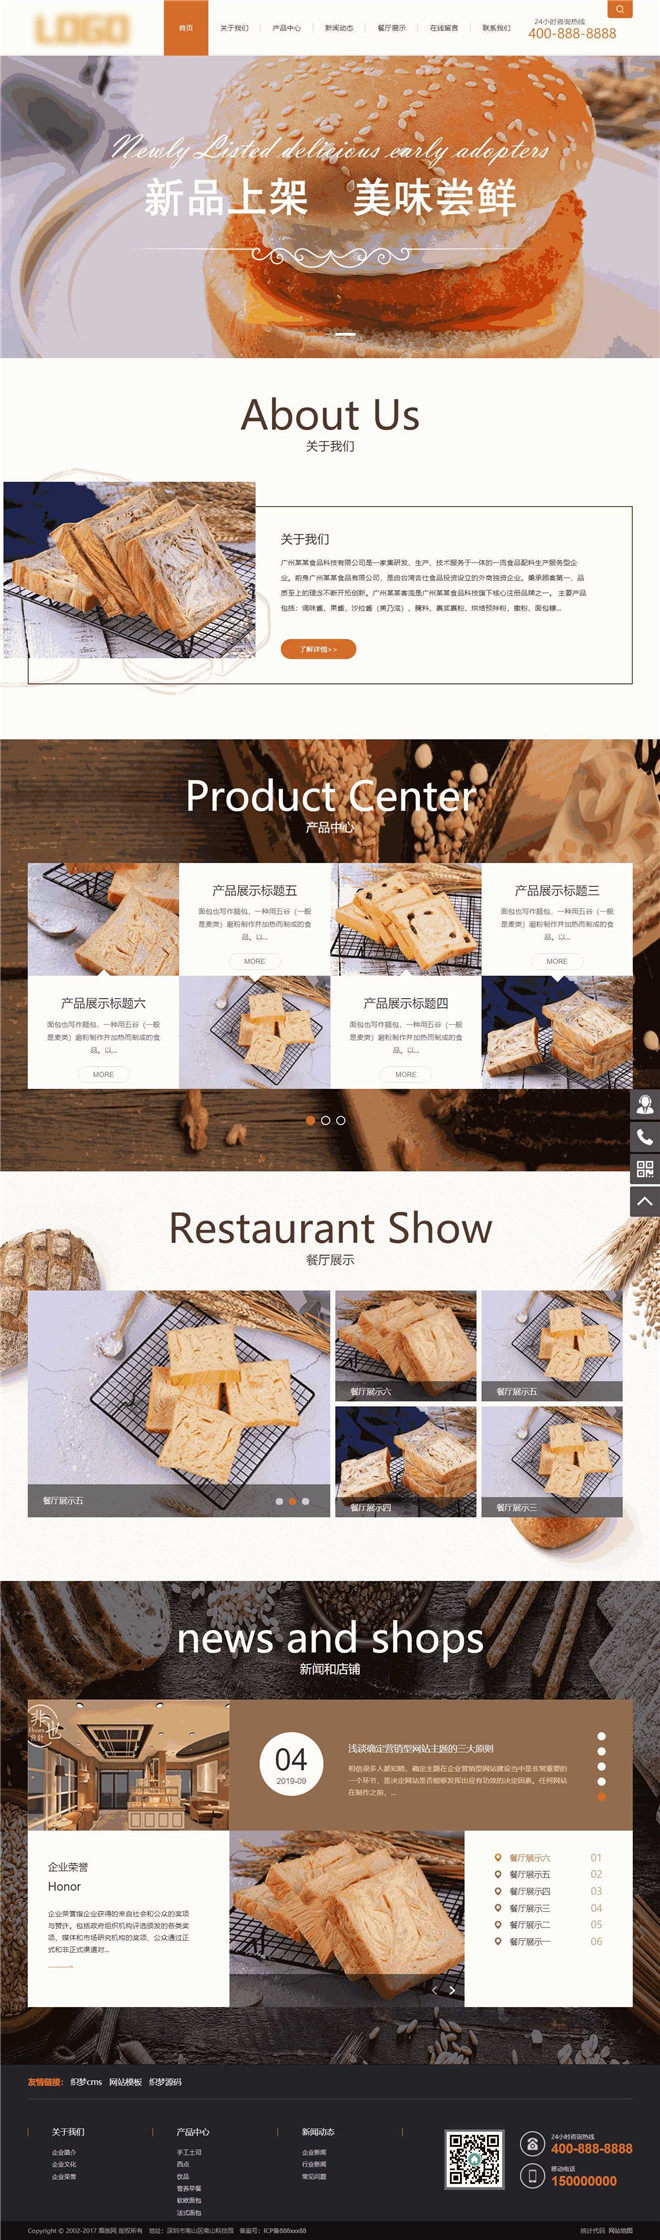 蛋糕面包食品销售展示网站模板截图